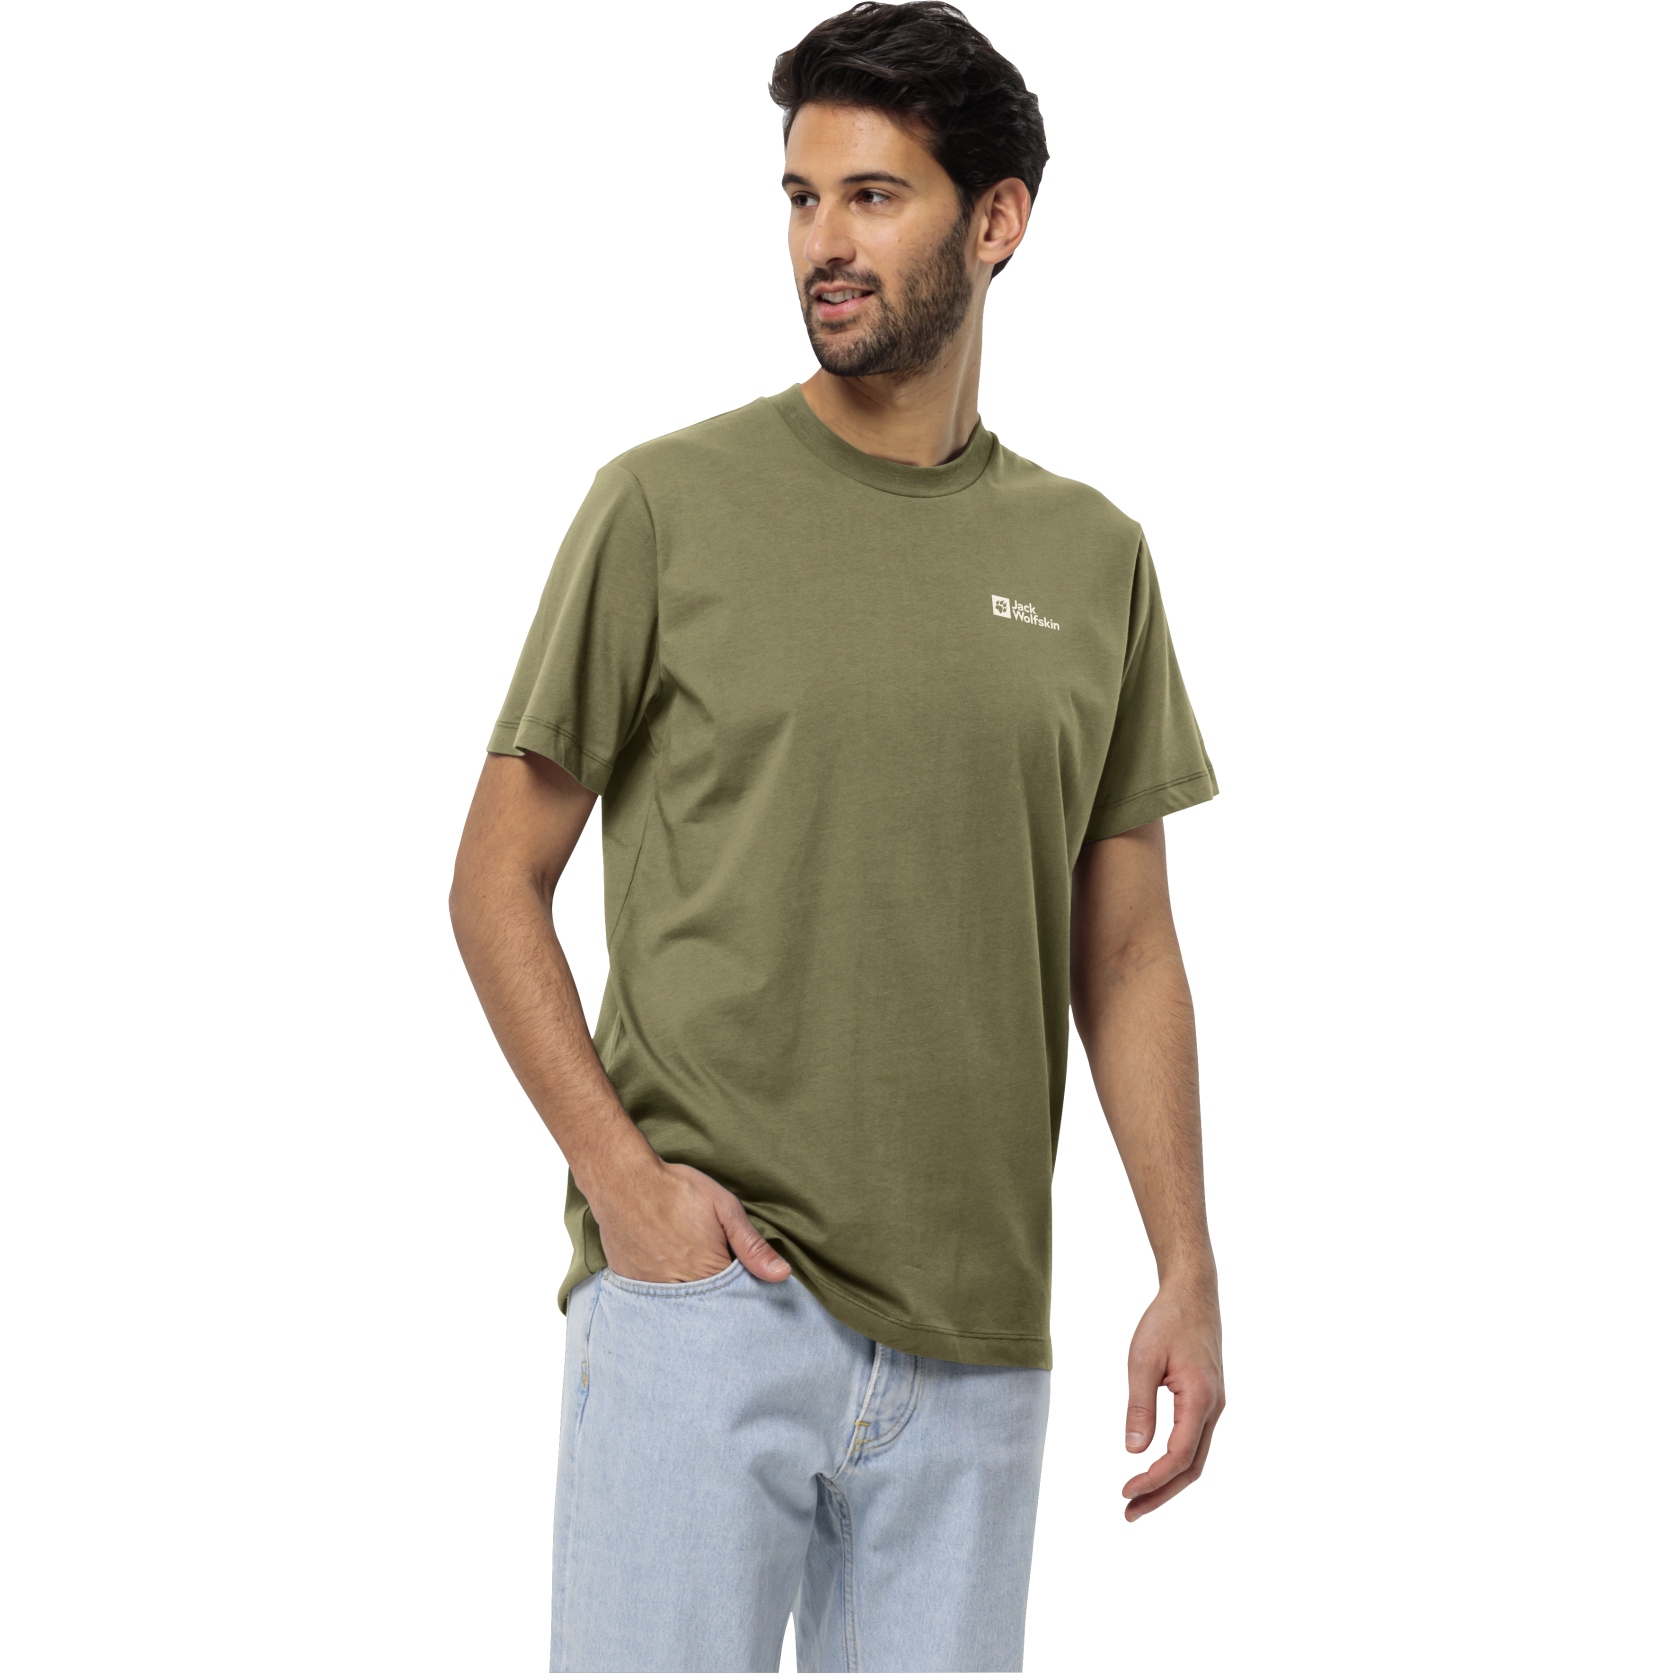 Produktbild von Jack Wolfskin Essential T-Shirt Herren - bay leaf